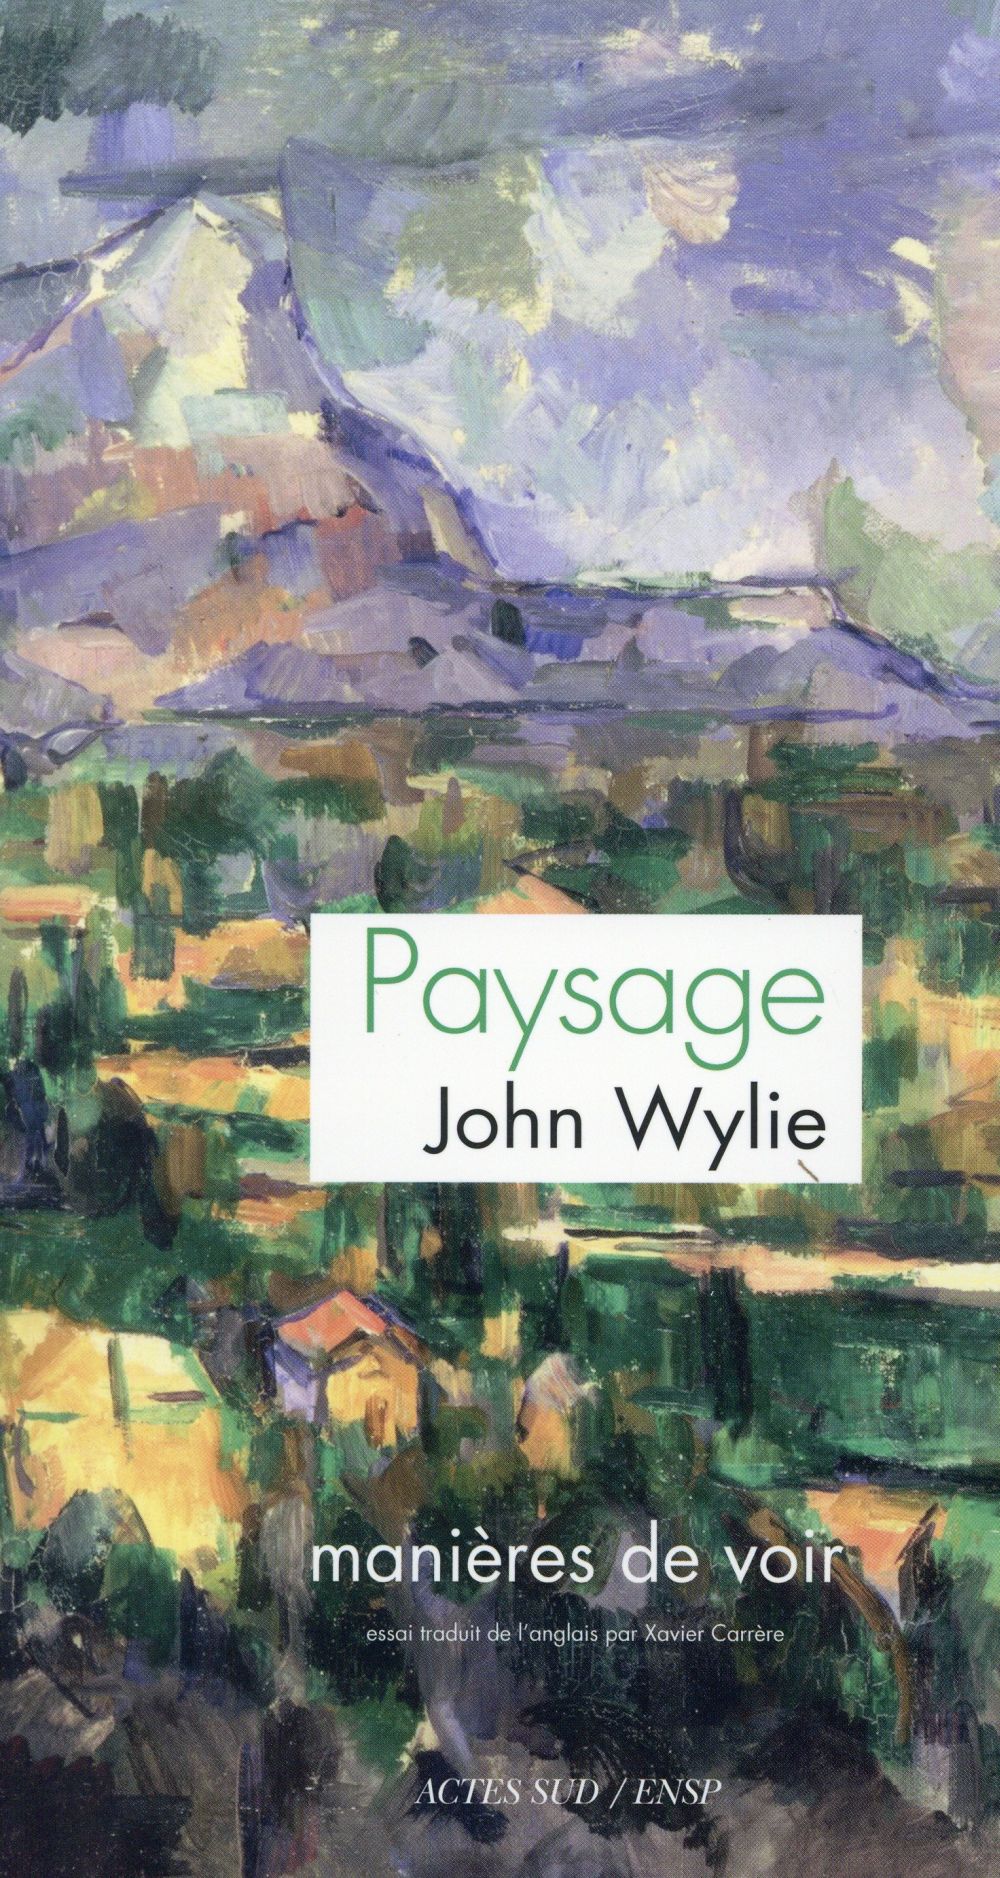 PAYSAGE, manières de voir - John WYLIE